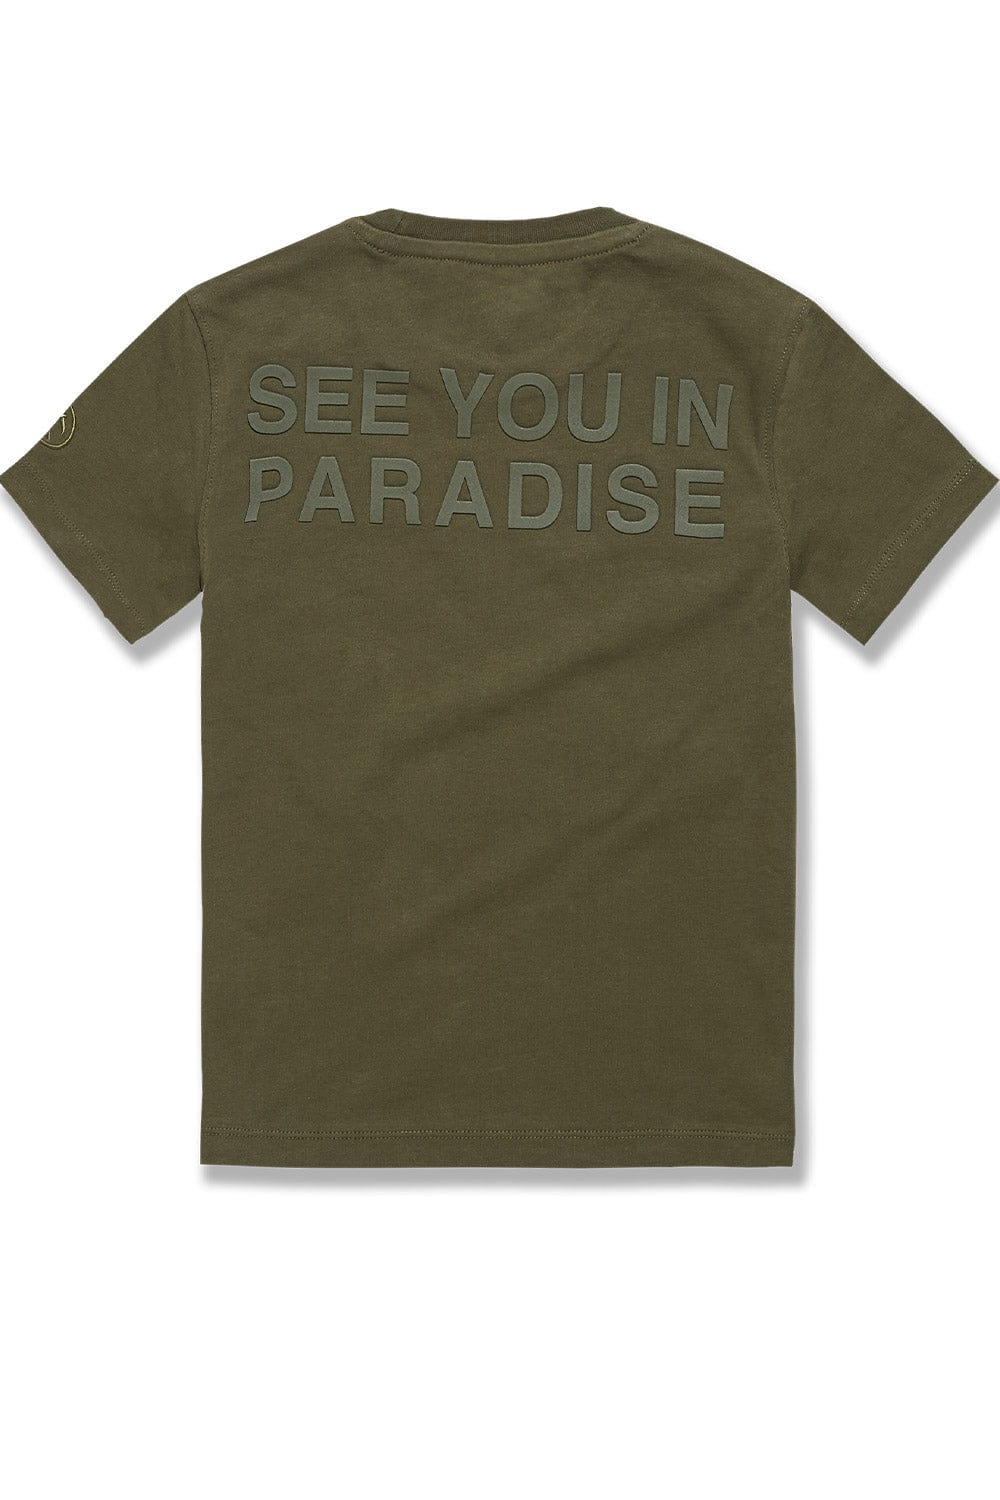 JC Kids Kids Paradise Tonal T-Shirt (Olive)